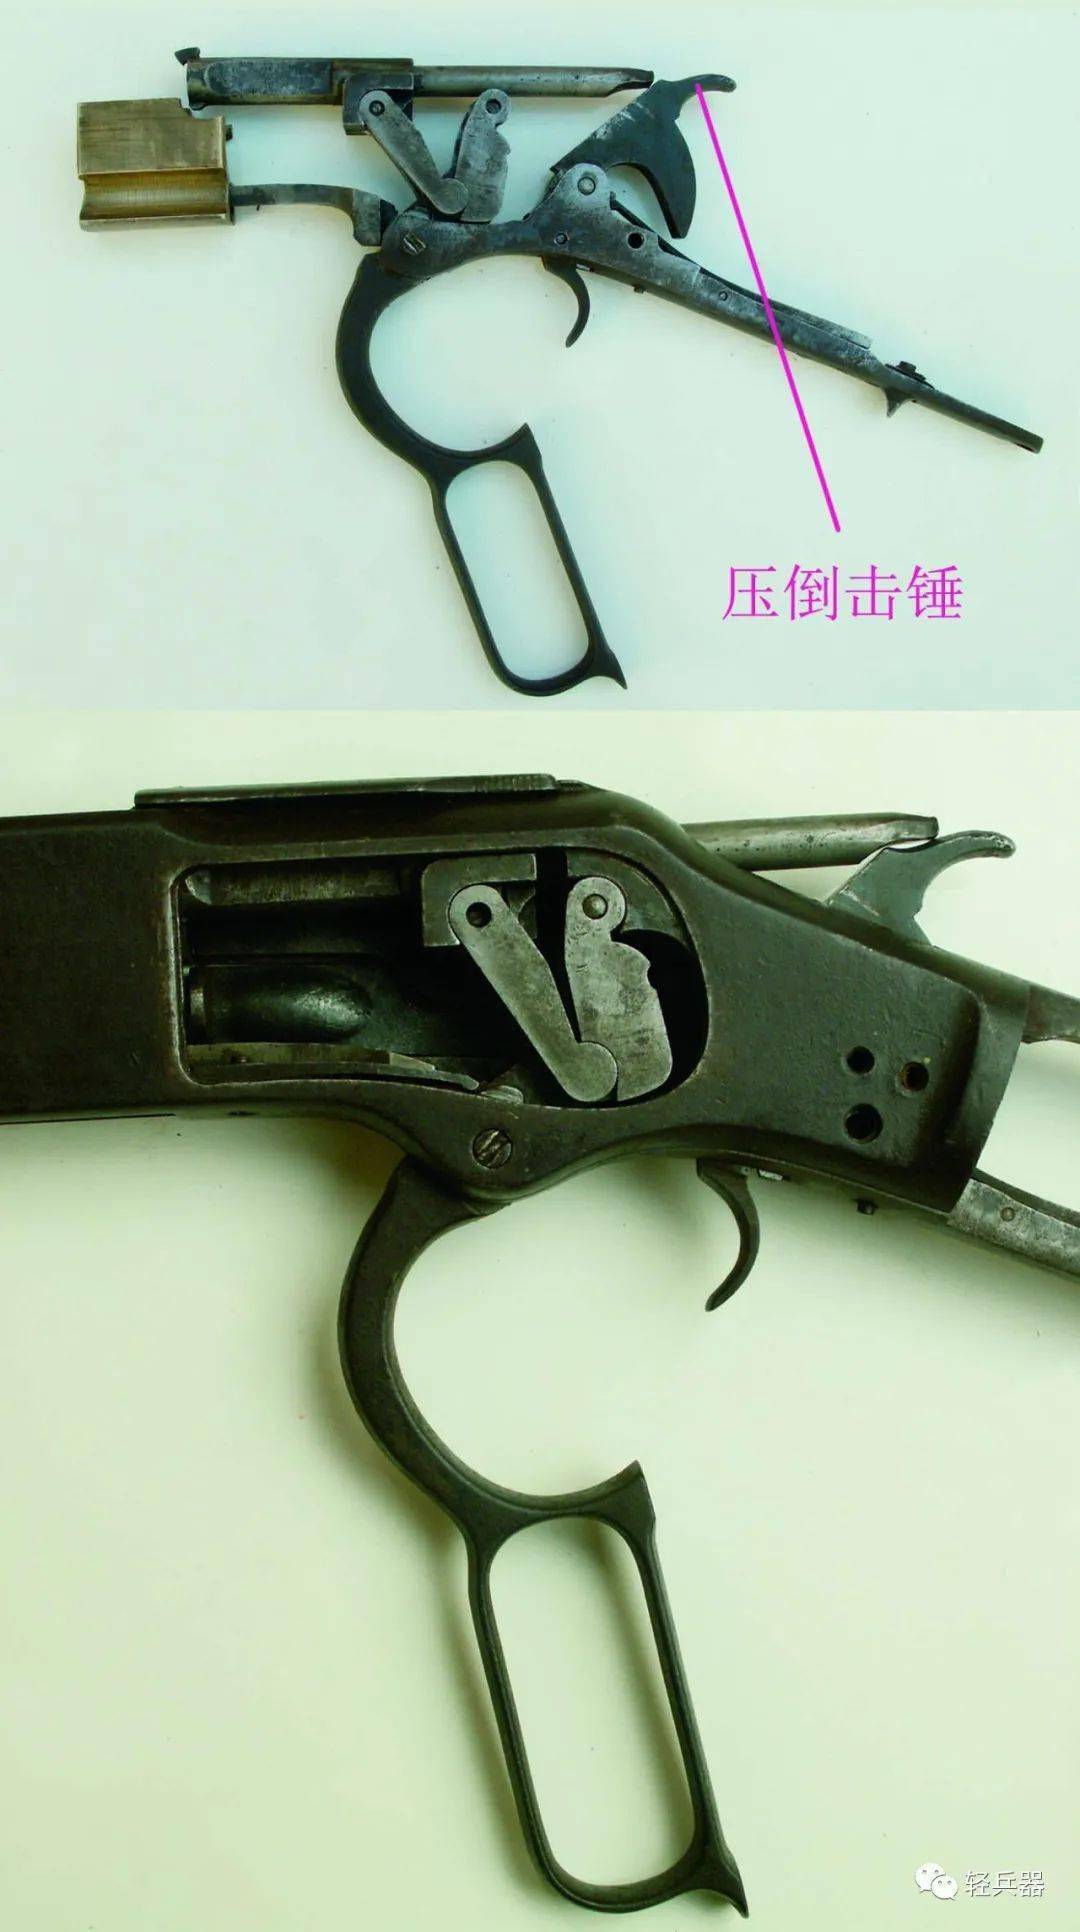 1,射击状态动作原理演示图m1873杠杆枪机式步枪主要部件分解图扳机护